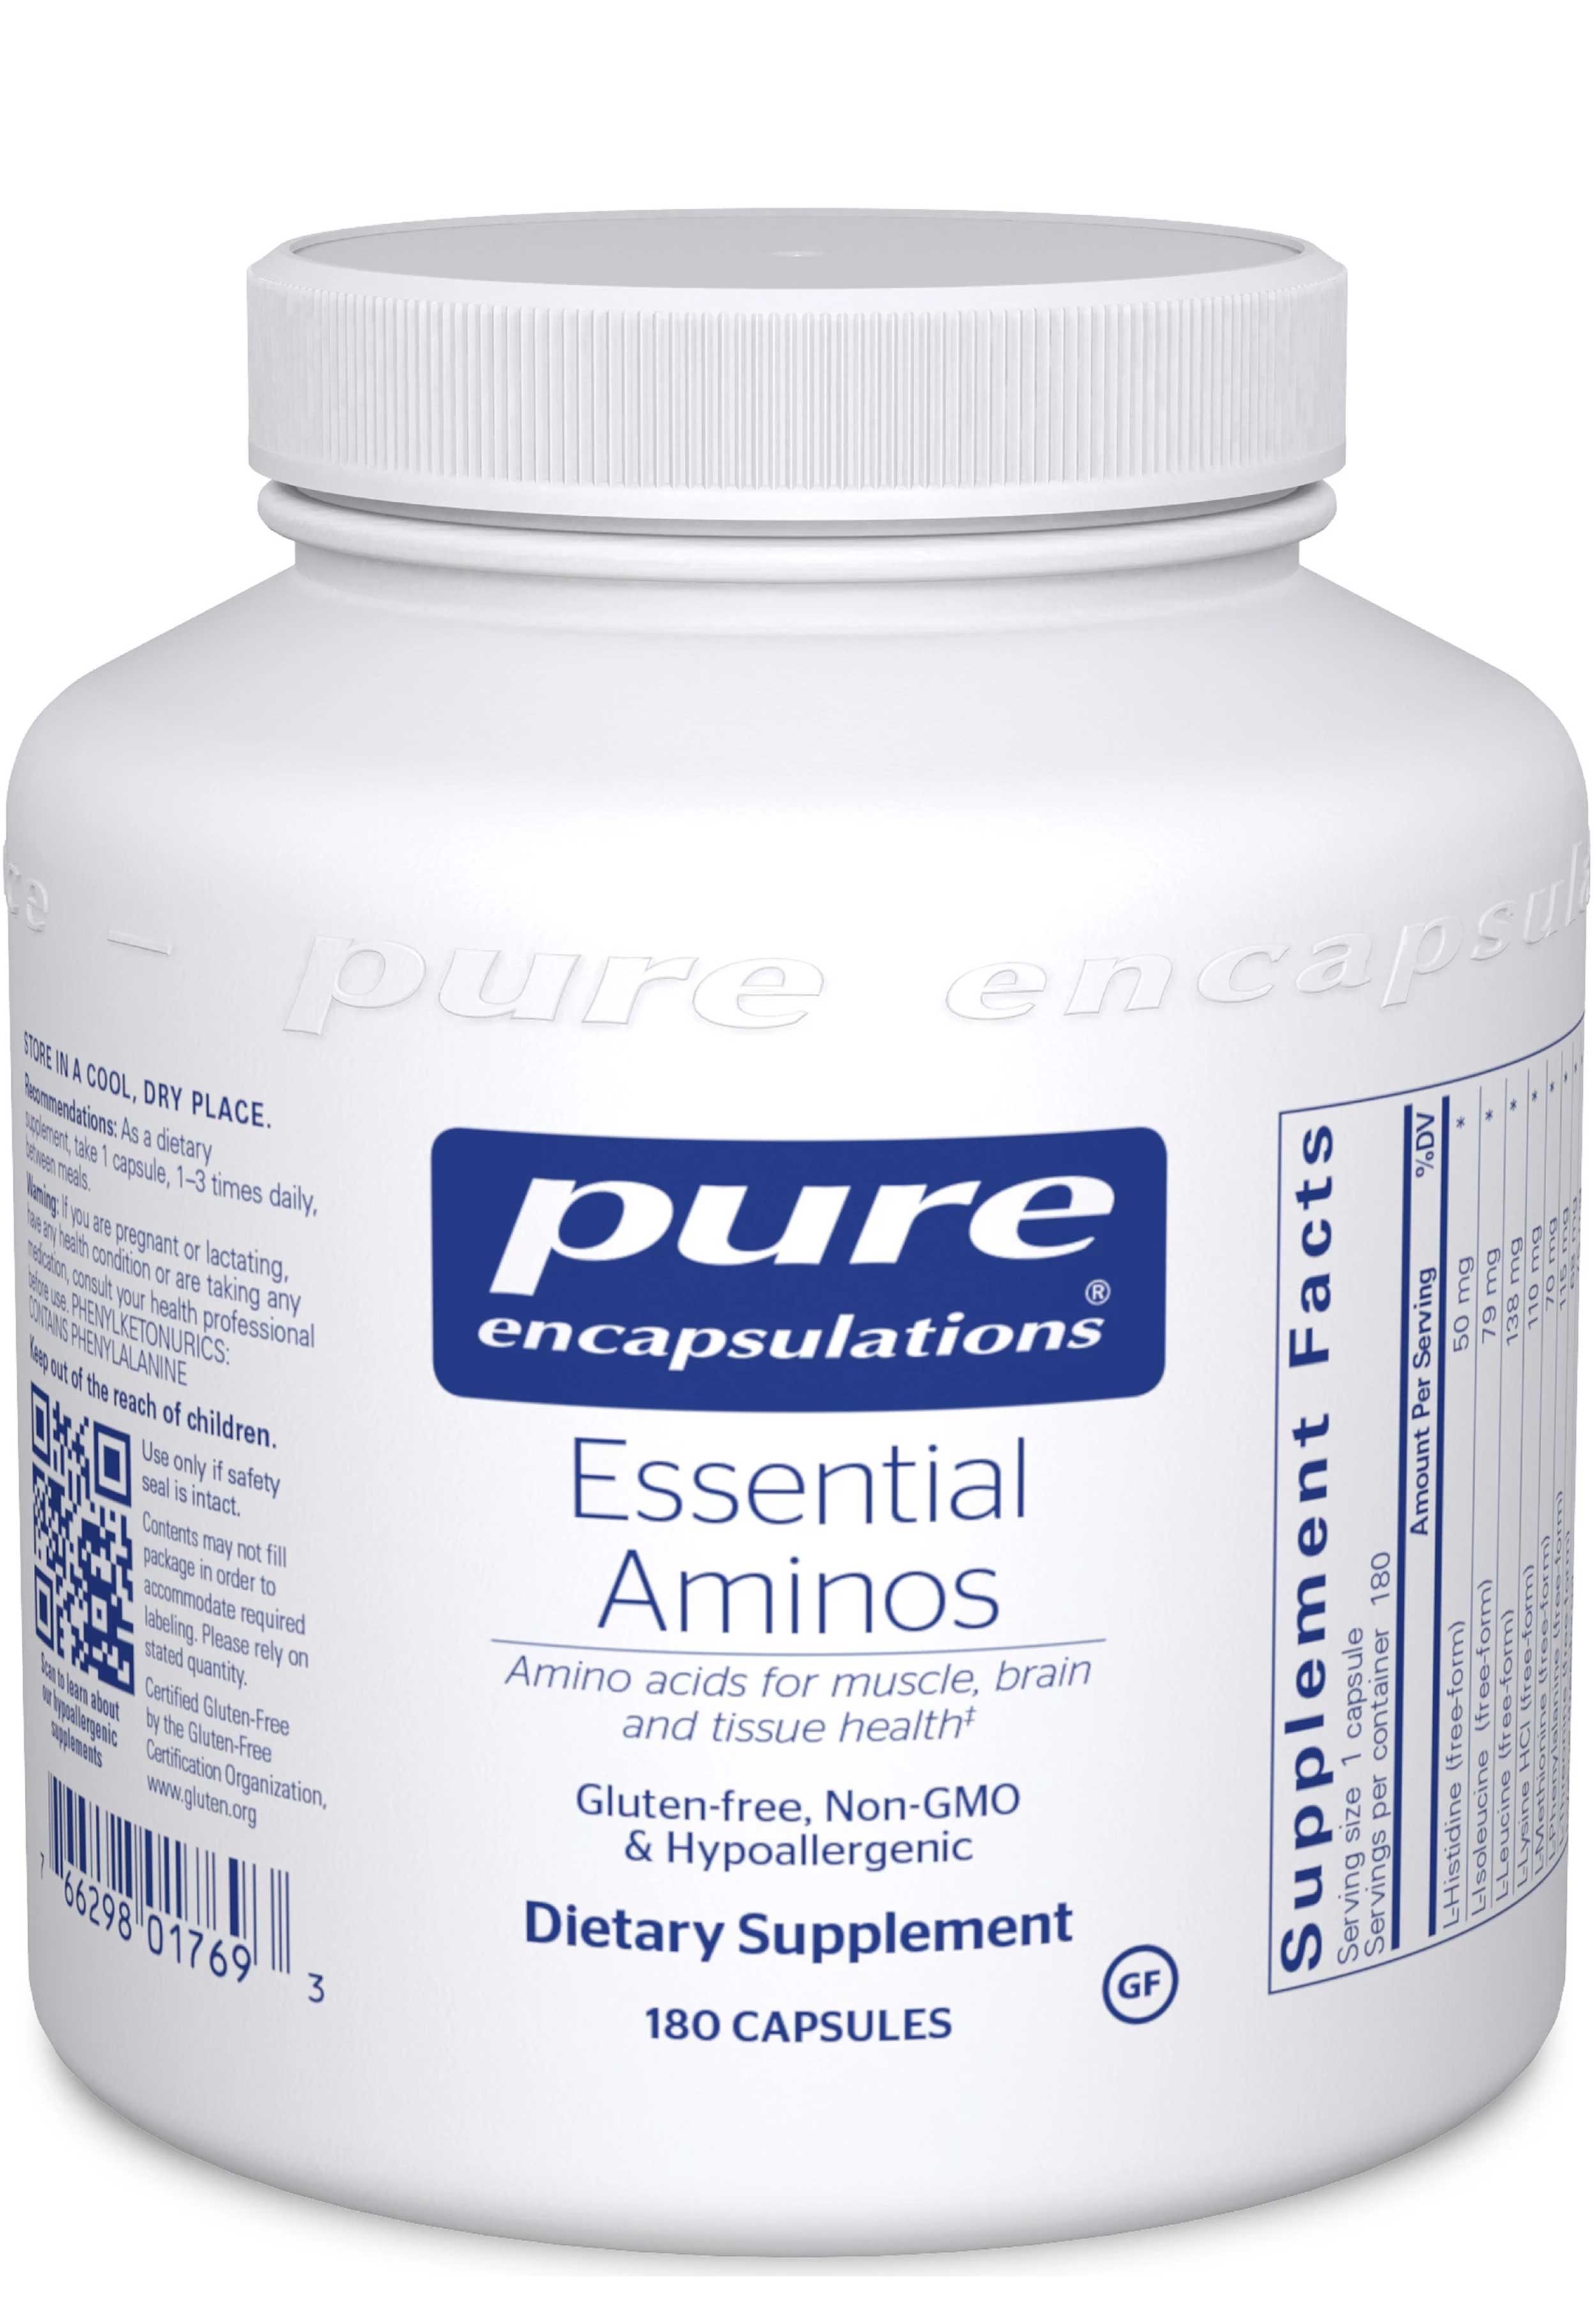 Pure Encapsulations Essential Aminos